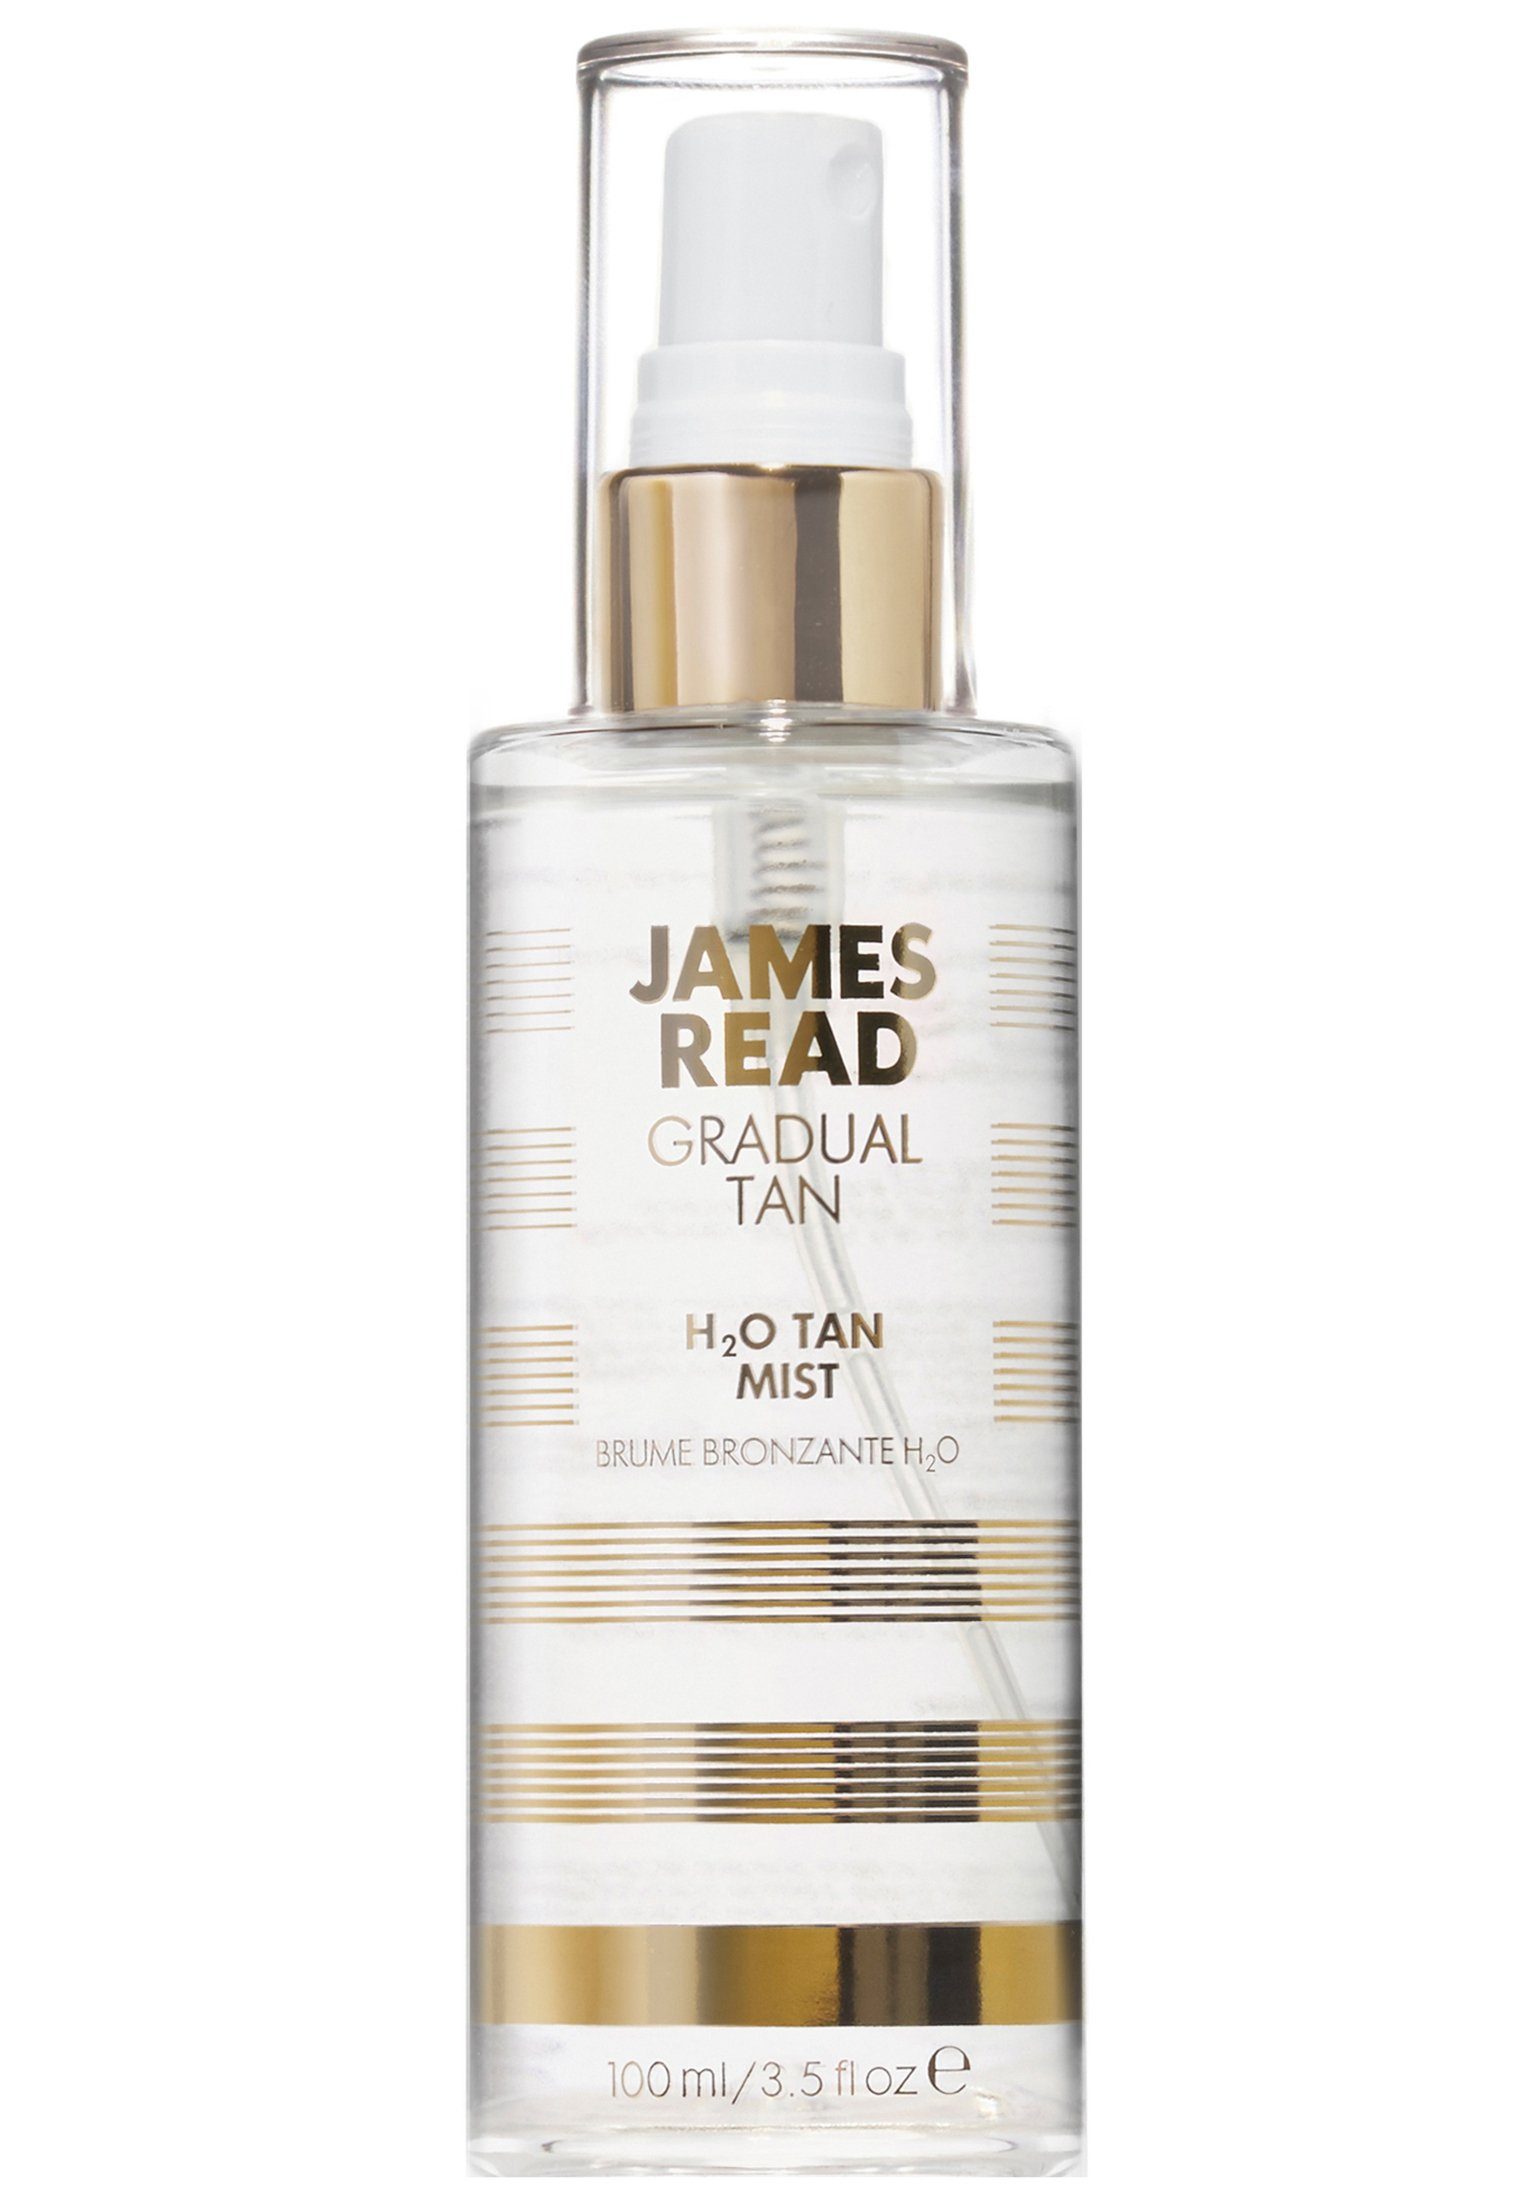 James Read Gesichts- pflegendes und Tan James H2O Read Gesichtsspray Körperspray Bräunungseffekt! Gesichtsspray mit Erfrischendes, Mist